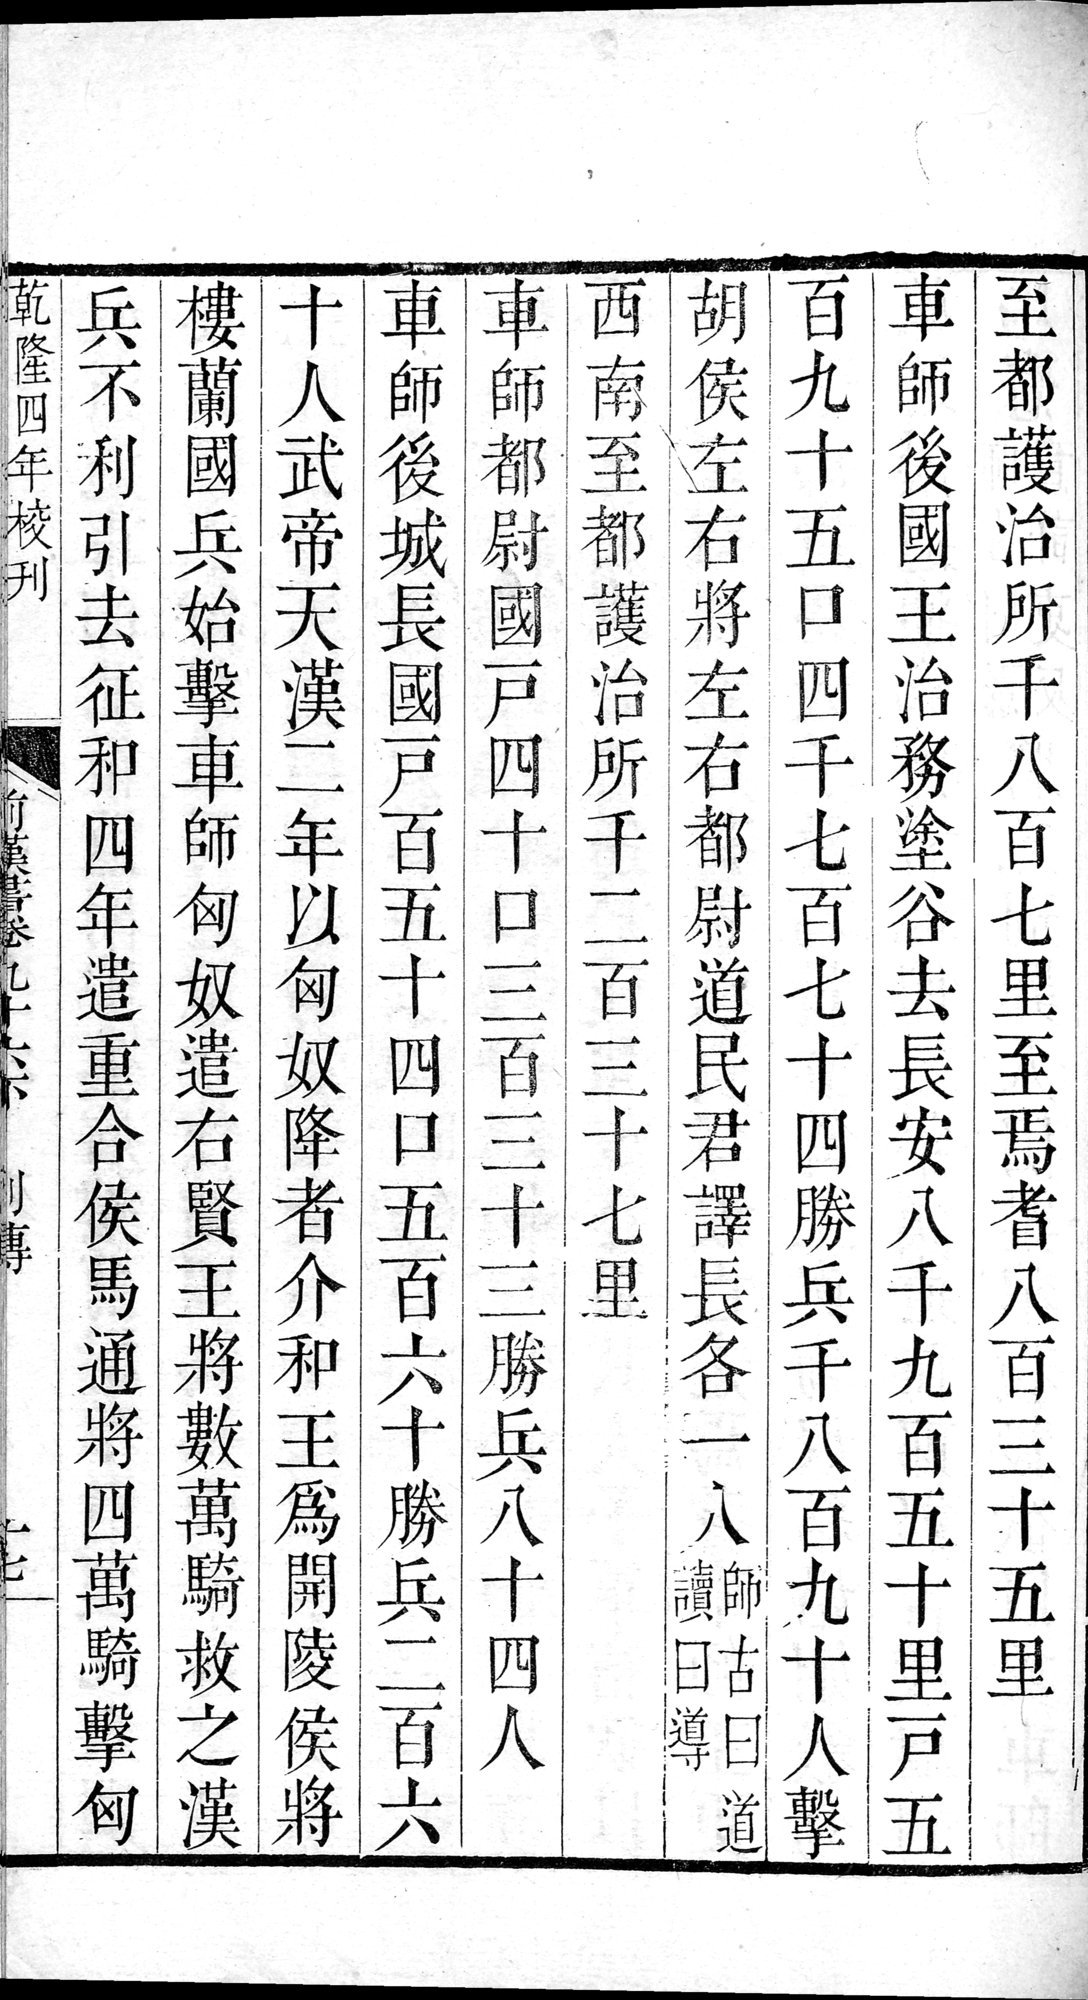 前漢書 巻96下 : vol.96 bottom / Page 33 (Grayscale High Resolution Image)